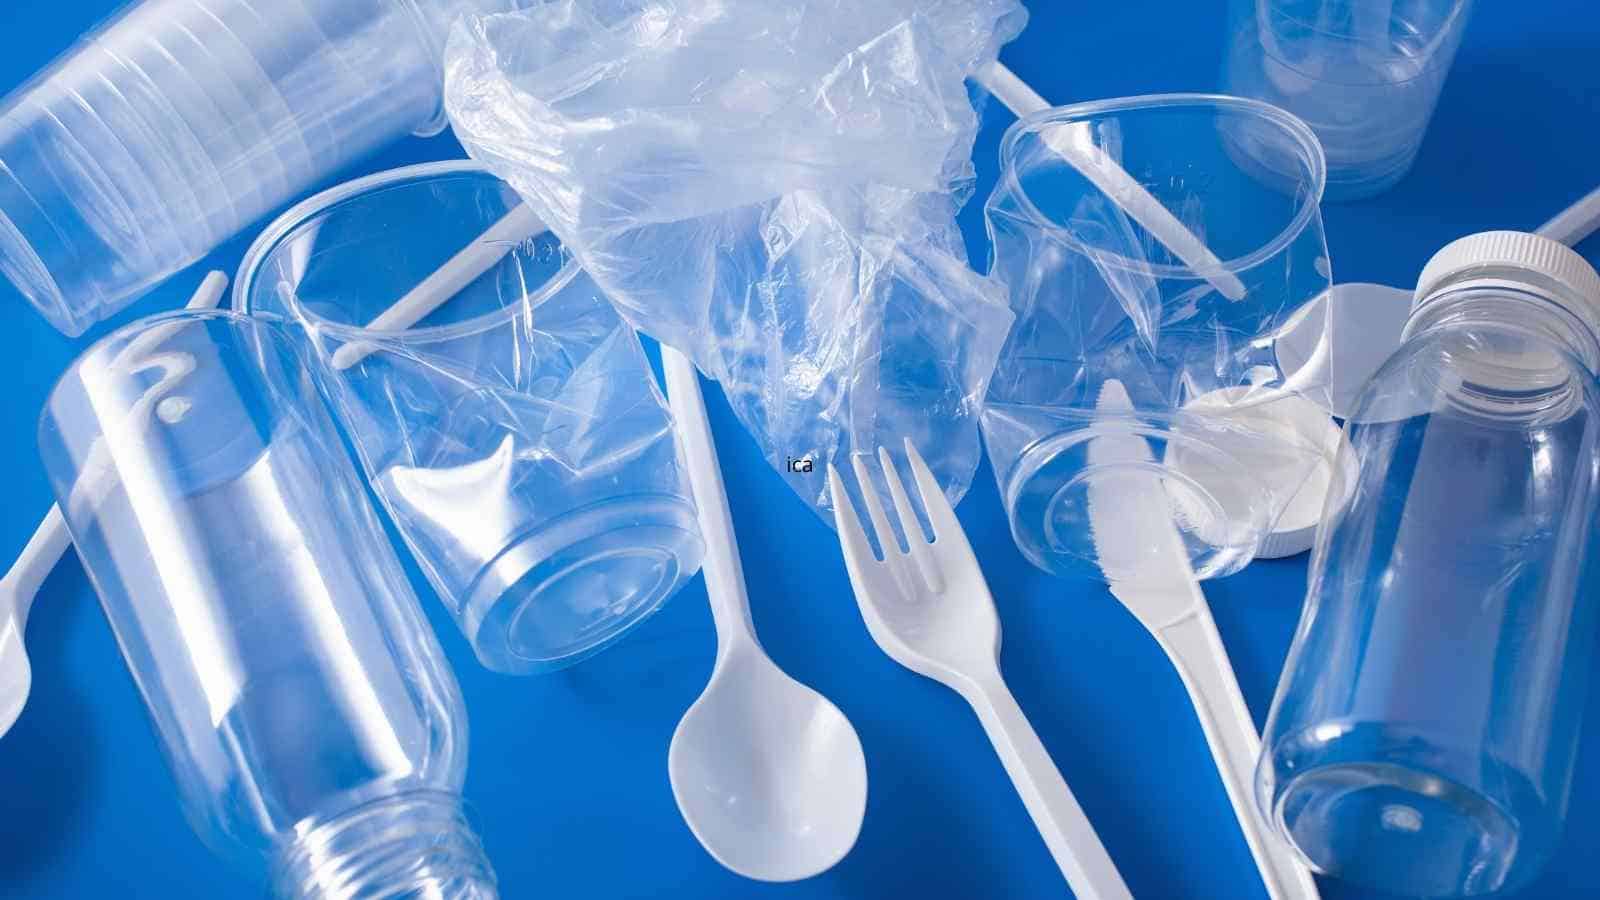 La plastica monouso finalmente bandita dall'Europa, grazie ad una legge creata per evitare l'accumulo di rifiuti